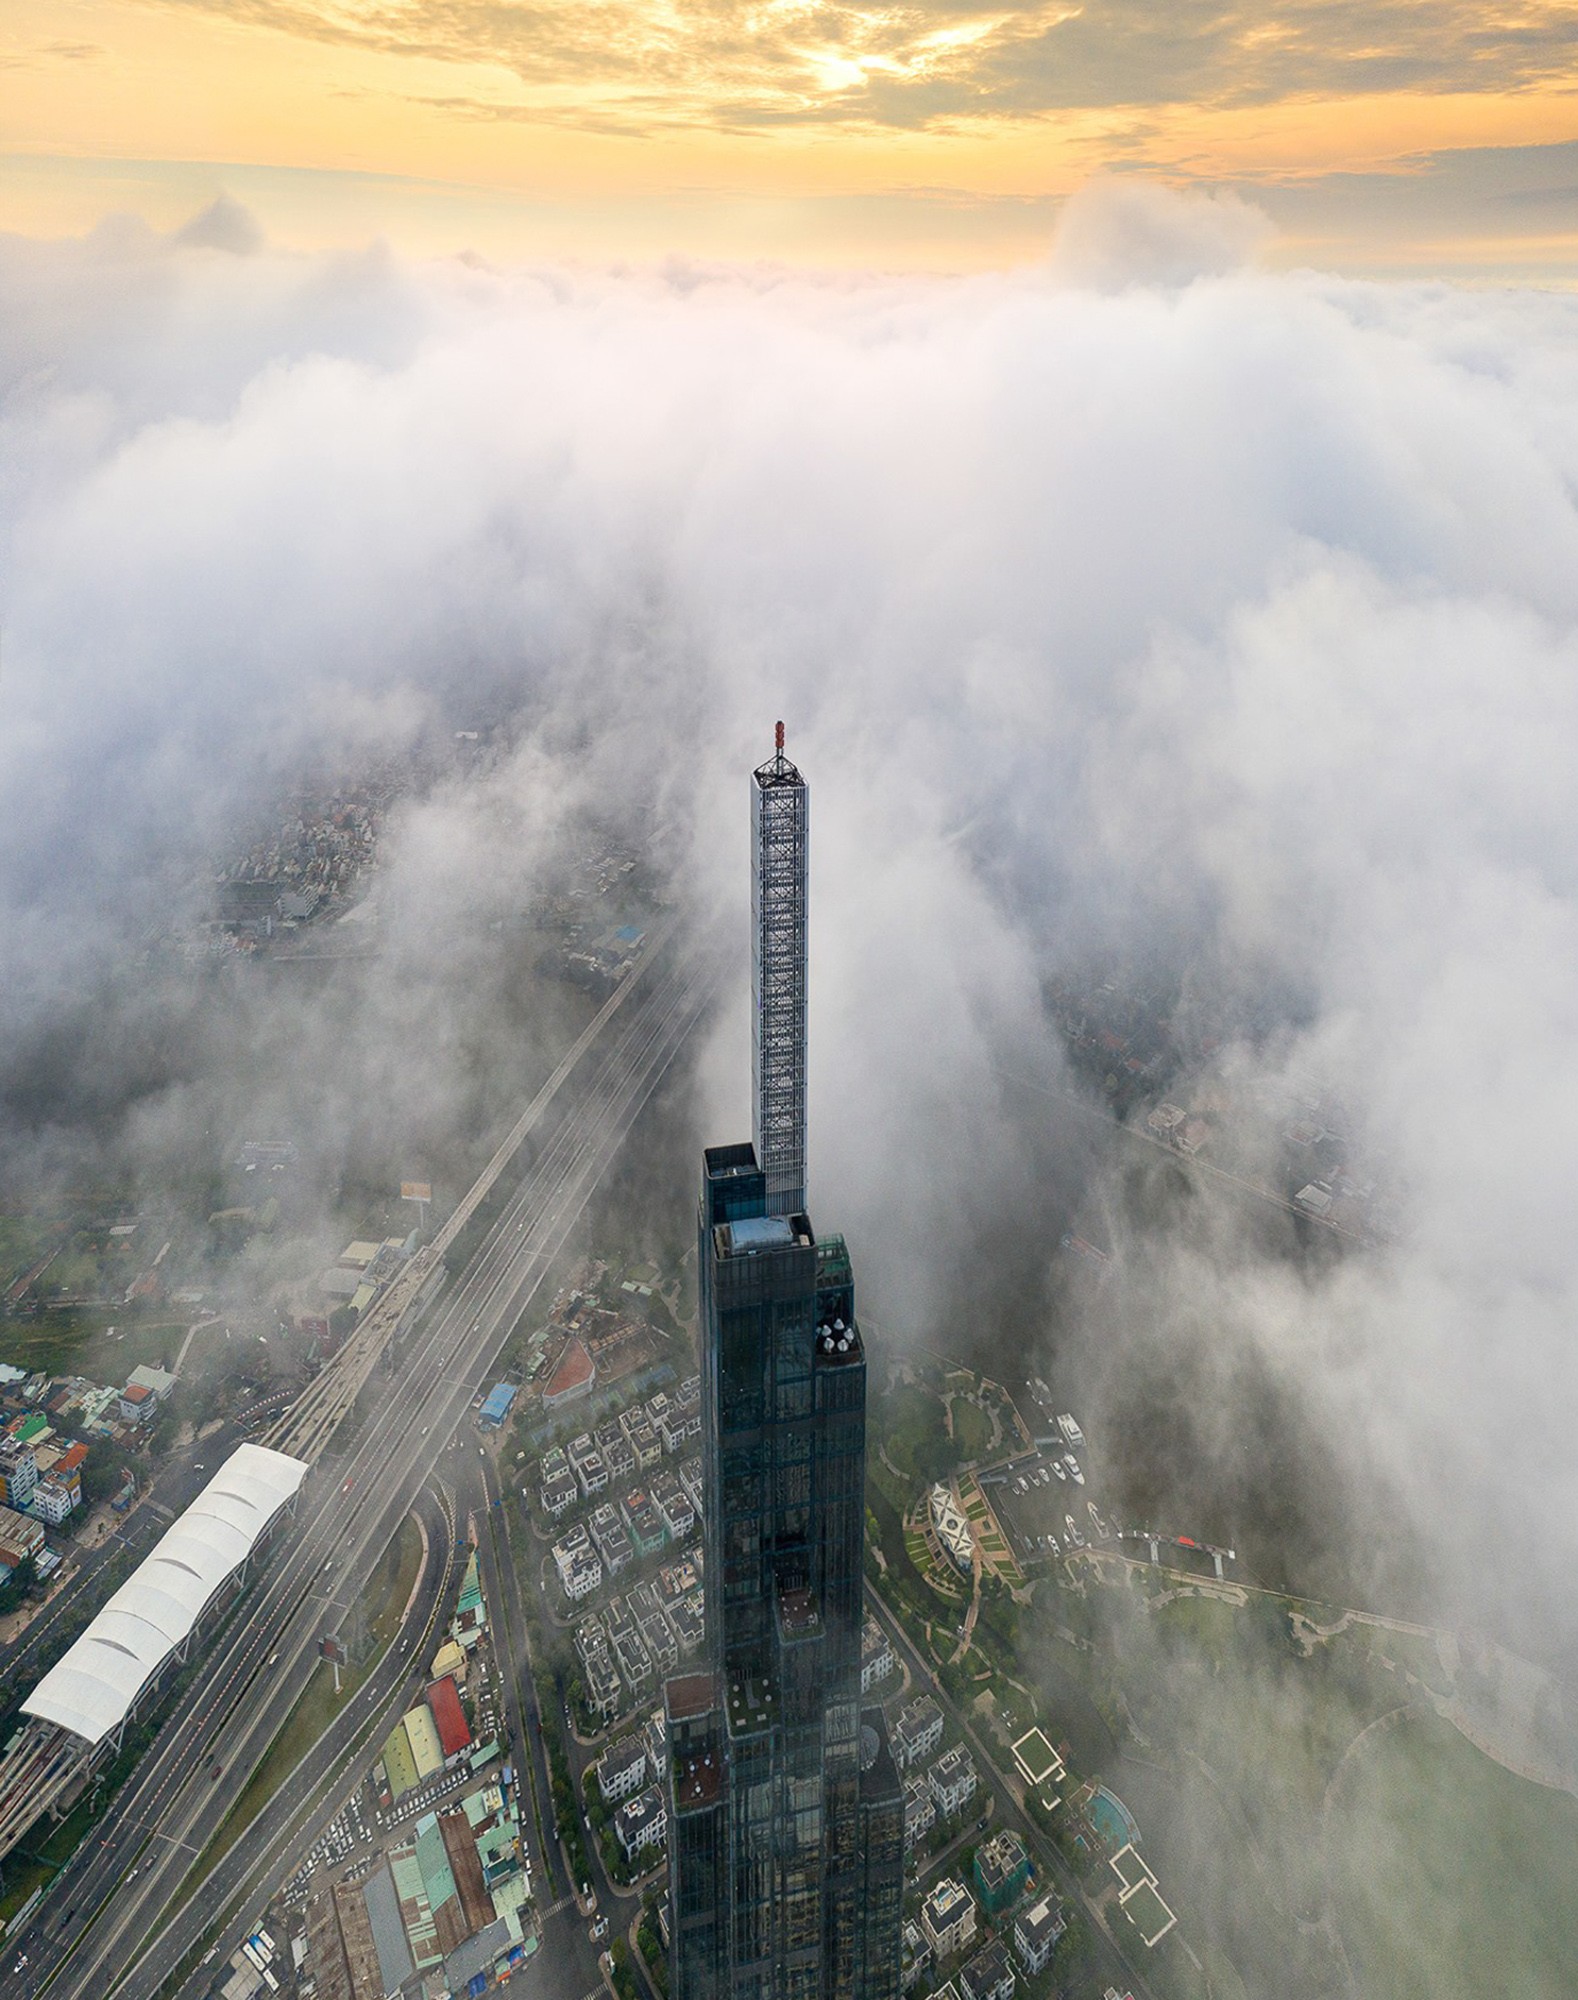 Với độ cao lên đến gần 0.5km, nửa phía trên của toà nhà này thường xuyên chìm trong biển mây, tạo nên một khung cảnh kỳ ảo. Toà nhà này sở hữu nhiều kỷ lục như đài quan sát cao nhất Việt Nam Landmark 81 Skyview, thang máy lên tầng 50 được mệnh danh là “thang máy nhanh nhất Việt Nam” với tốc độ 8m/s…